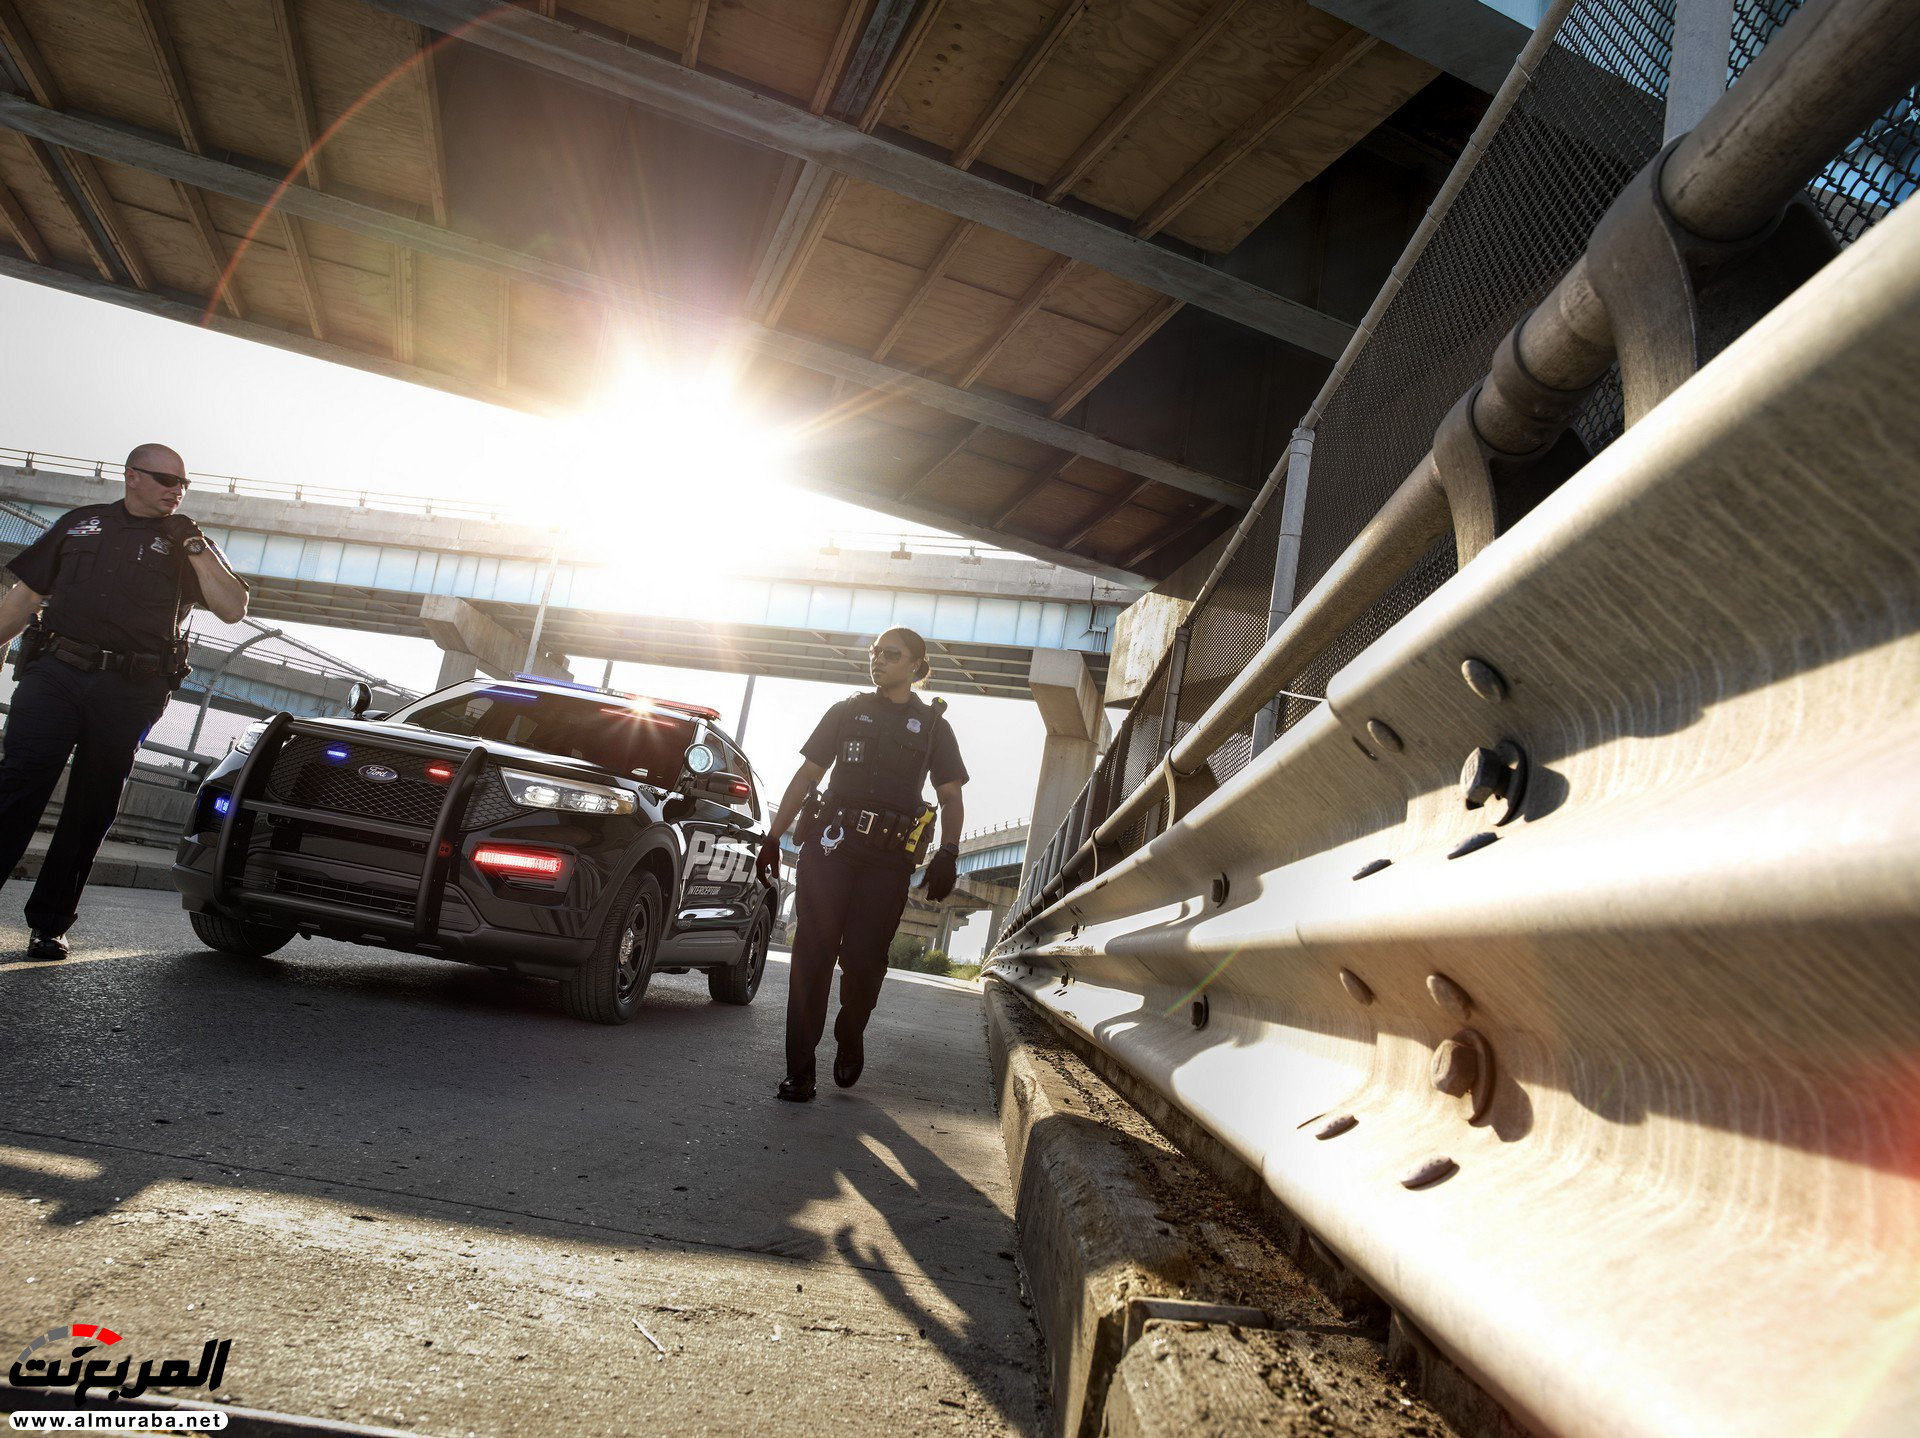 فورد اكسبلورر 2020 الجديدة كلياً تظهر رسمياً "نسخة الشرطة" 4